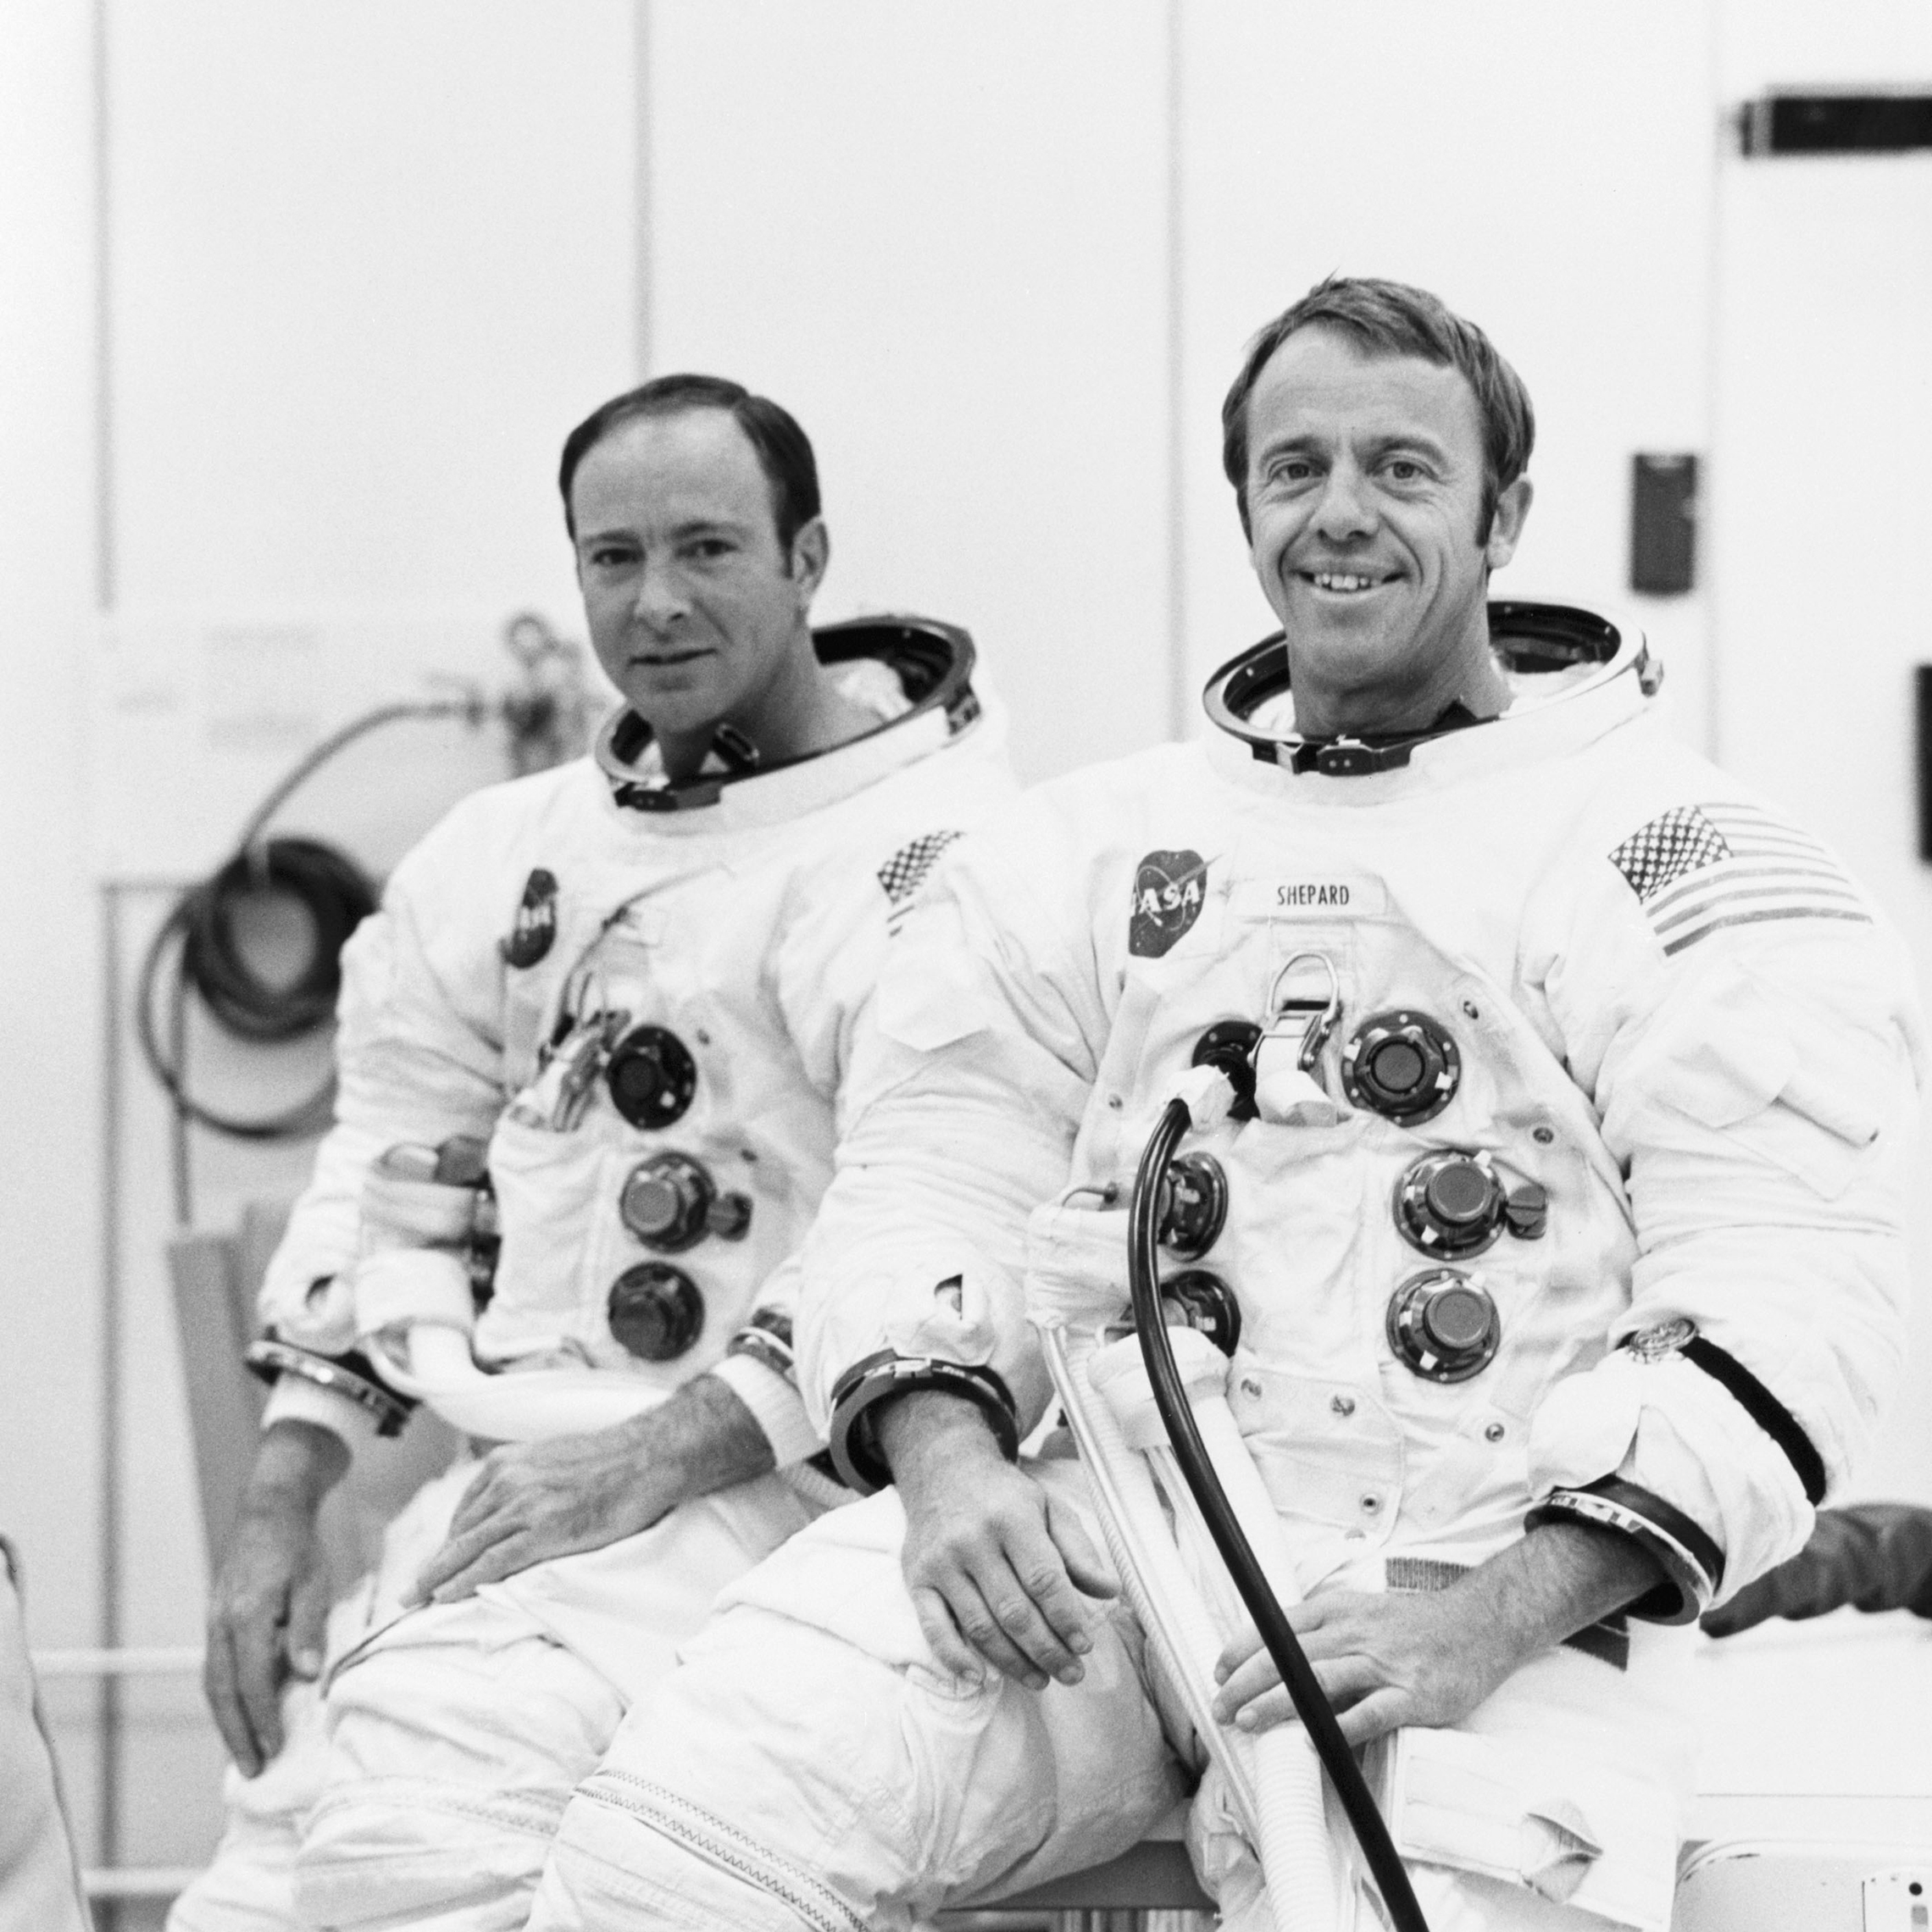 18 września 1970: Astronauci Alan B. Shepard Jr. (po prawej), dowódca i Edgar D. Mitchell, pilot modułu księżycowego, są przystosowani do załogowego biegu na wysokości w module księżycowym Apollo 14 (lm). Załogowy bieg w komorze próżniowej budynku załogowych statków kosmicznych został przeprowadzony w celu weryfikacji systemów łączności i naprowadzania i nawigacji LM. (NASA)'s communications and guidance and navigation systems. (NASA)